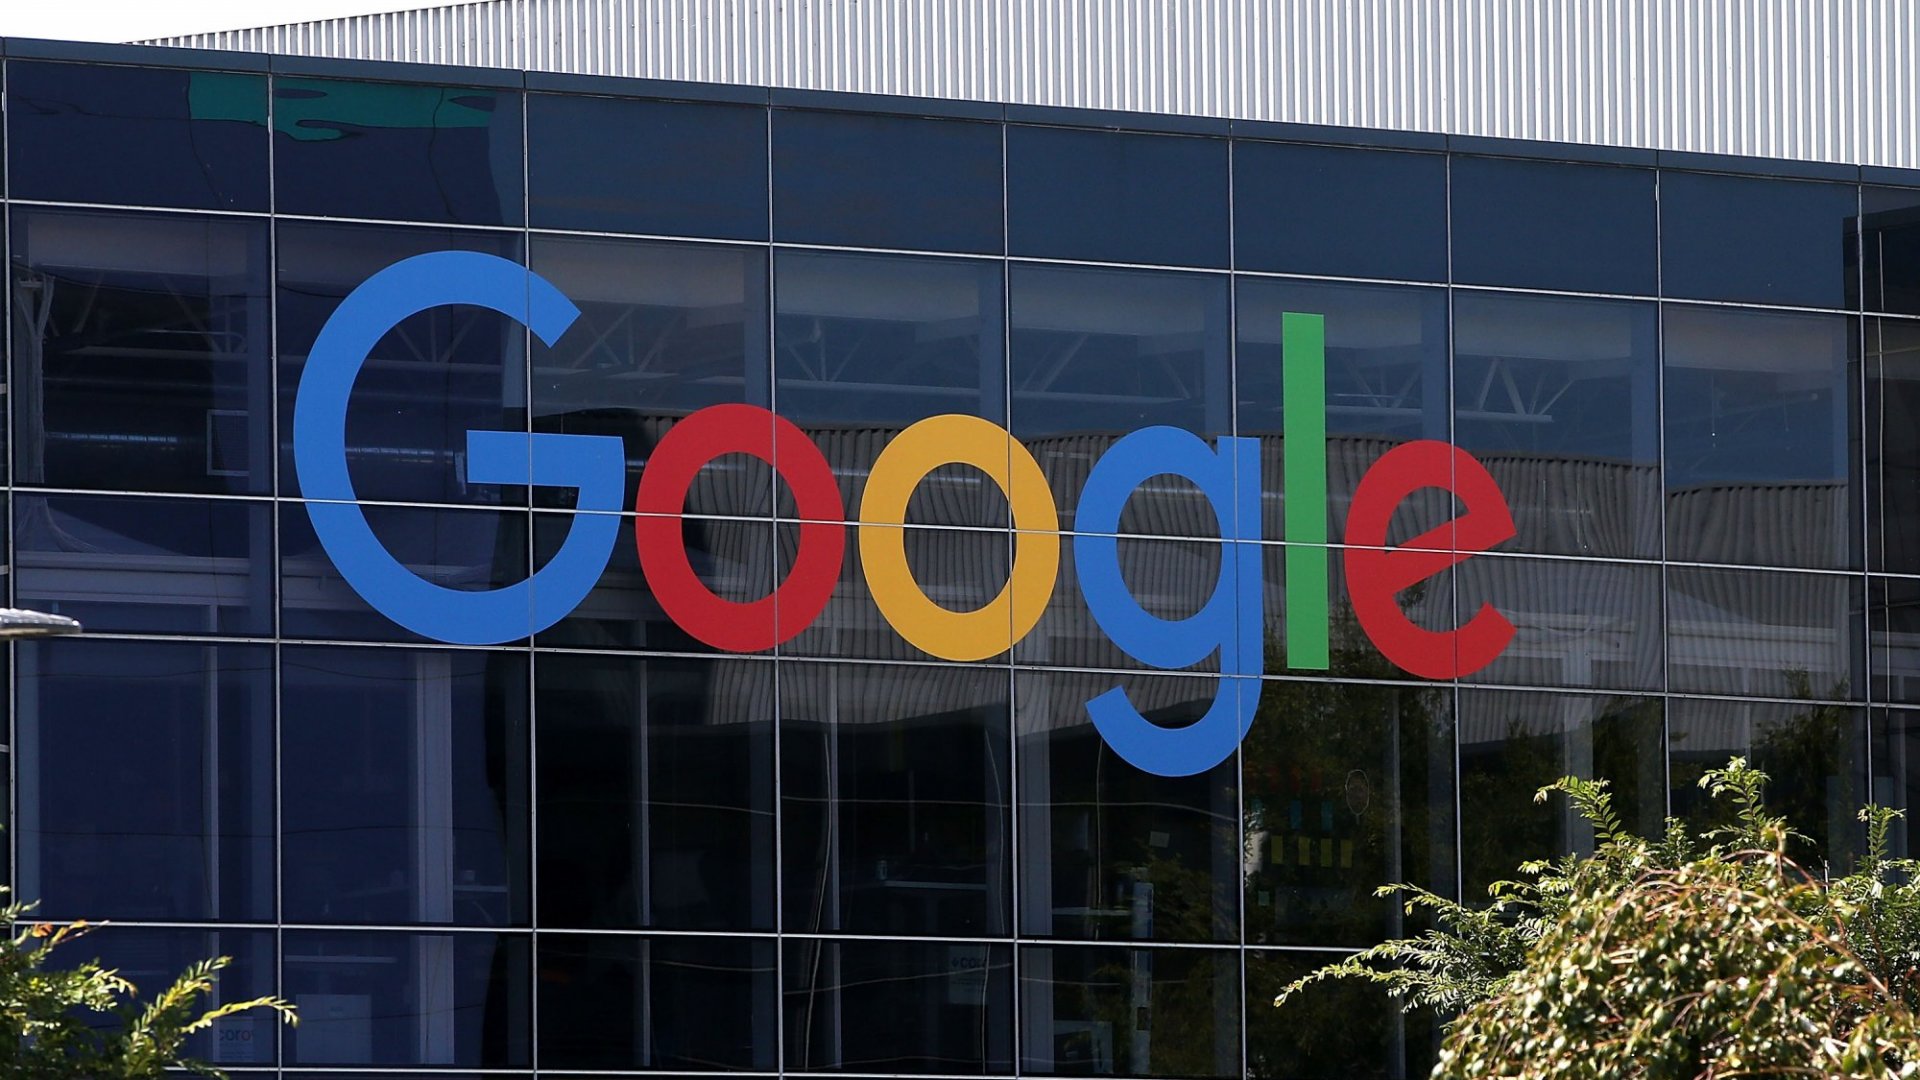 Karyawan Google mendapat tawaran skuter gratis demi balik lagi ke kantor.